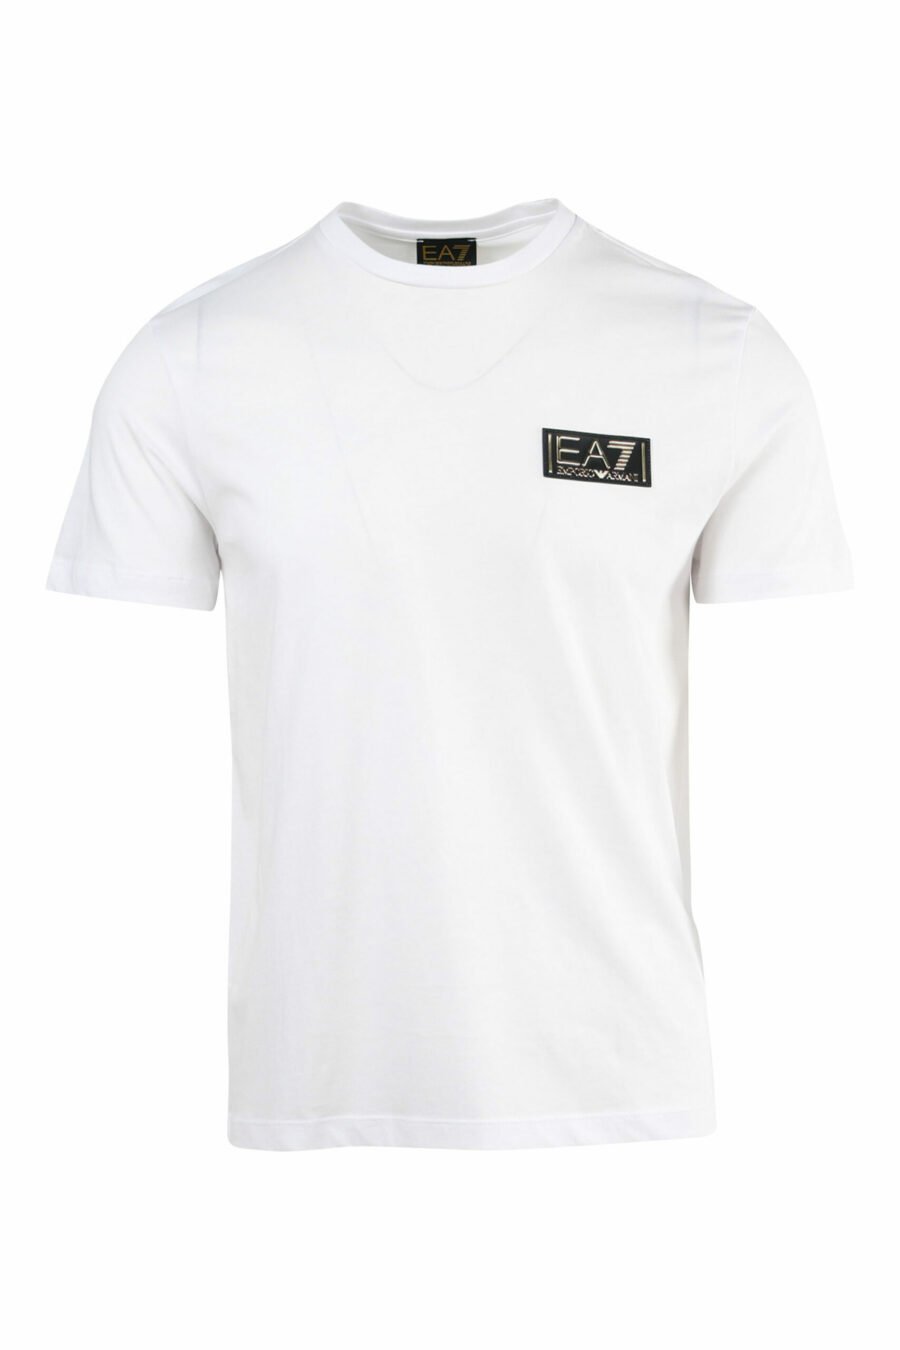 T-shirt branca com mini-logotipo dourado "lux identity" - 8057767515720 1 à escala